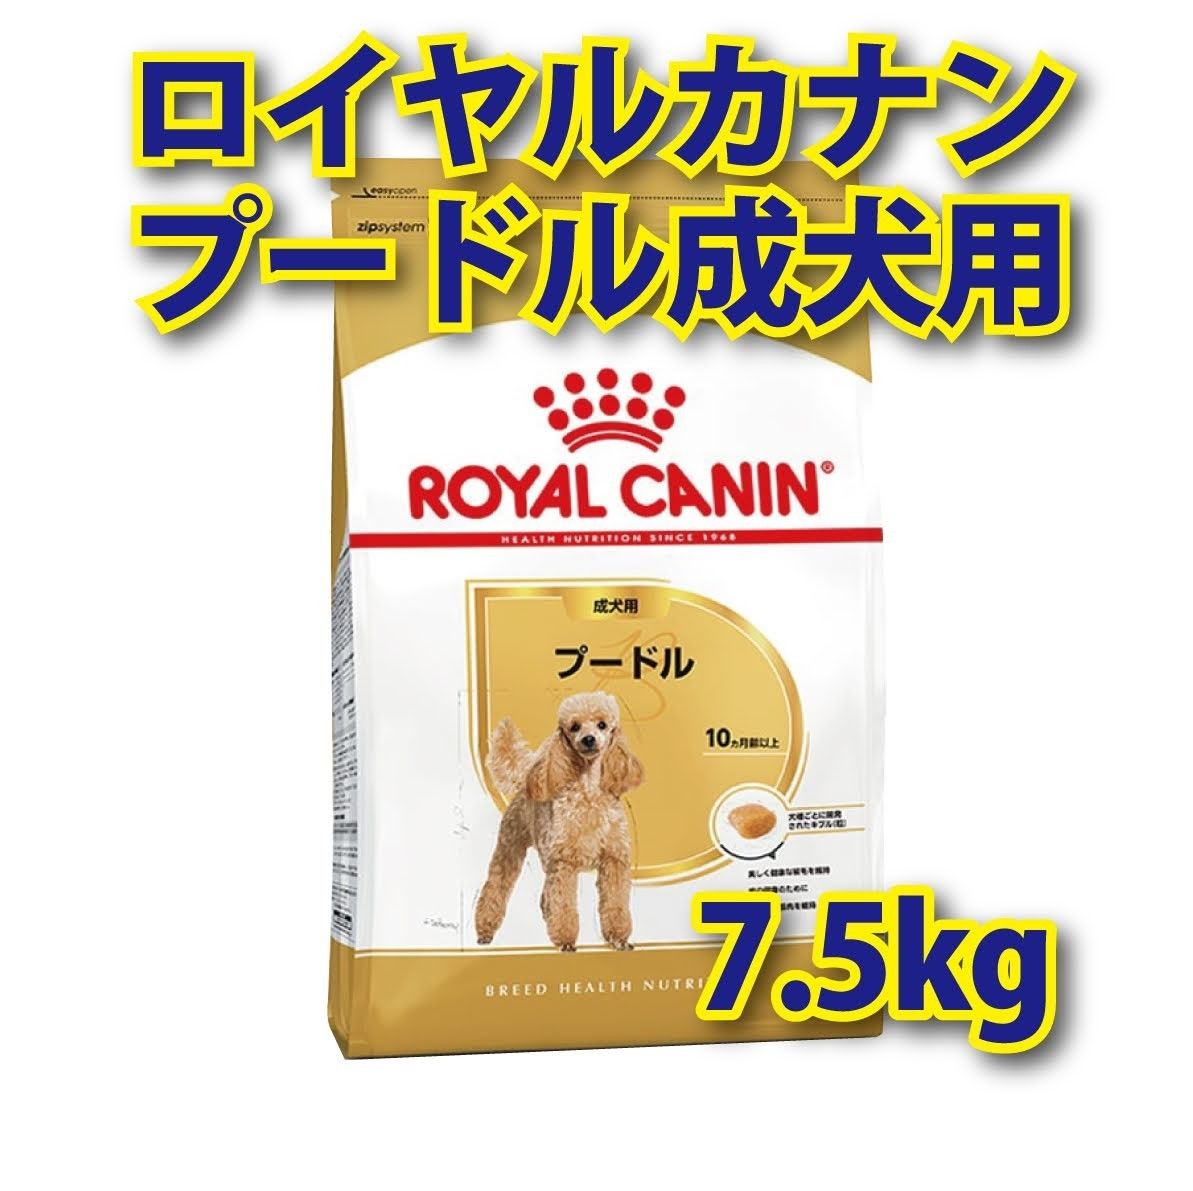 ★送料無料★ ロイヤルカナン プードル 成犬用 7.5kg